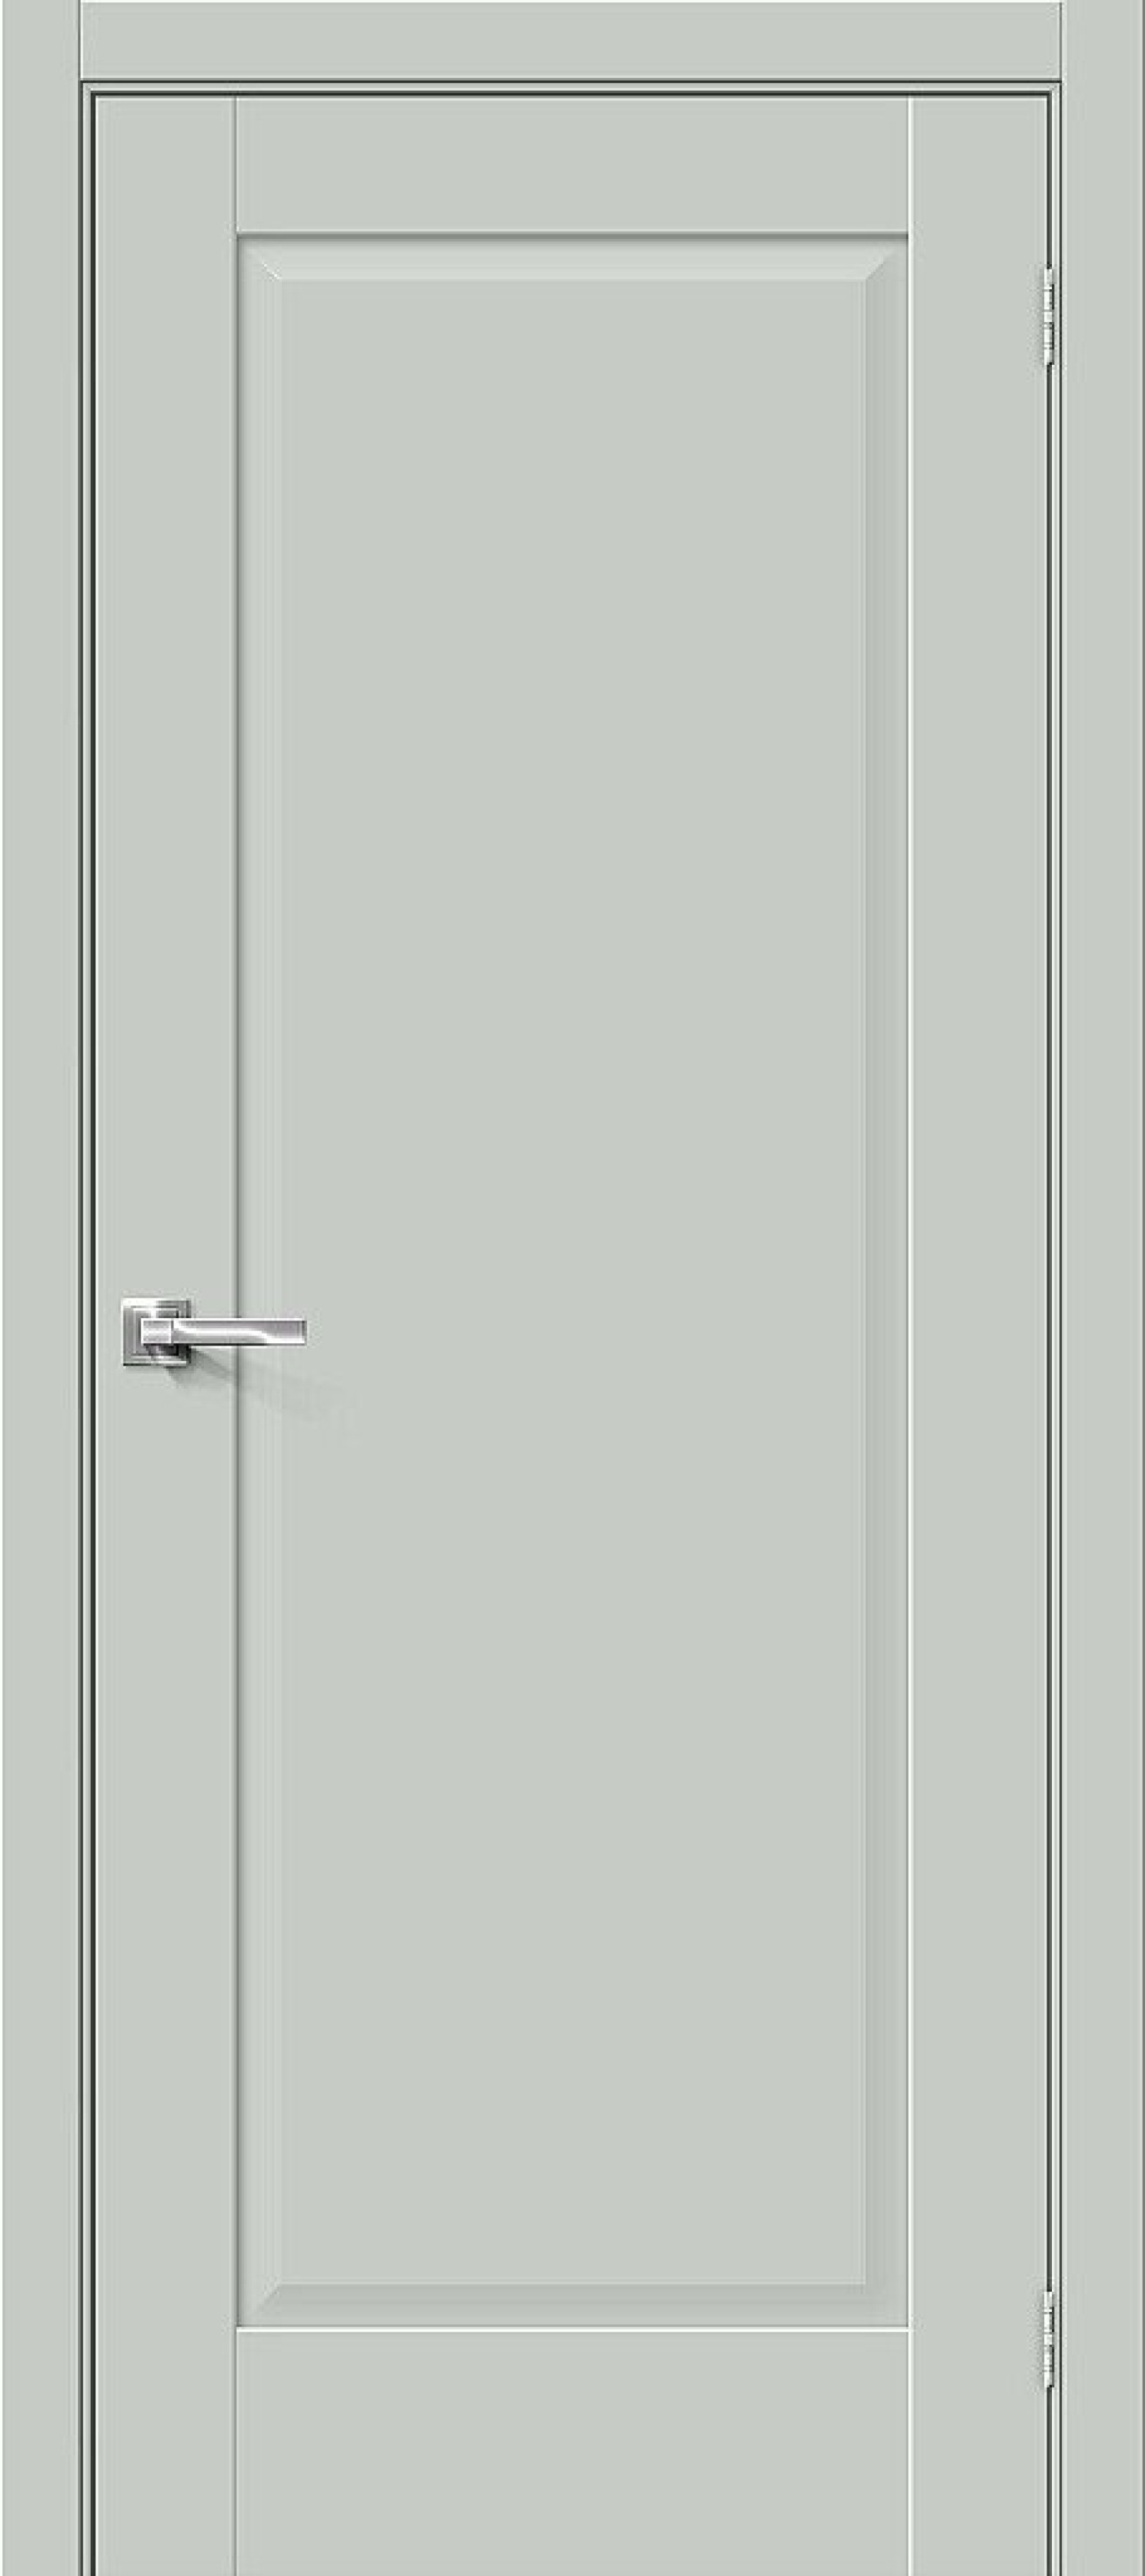 Межкомнатная дверь эмалит Прима-10 Grey Matt